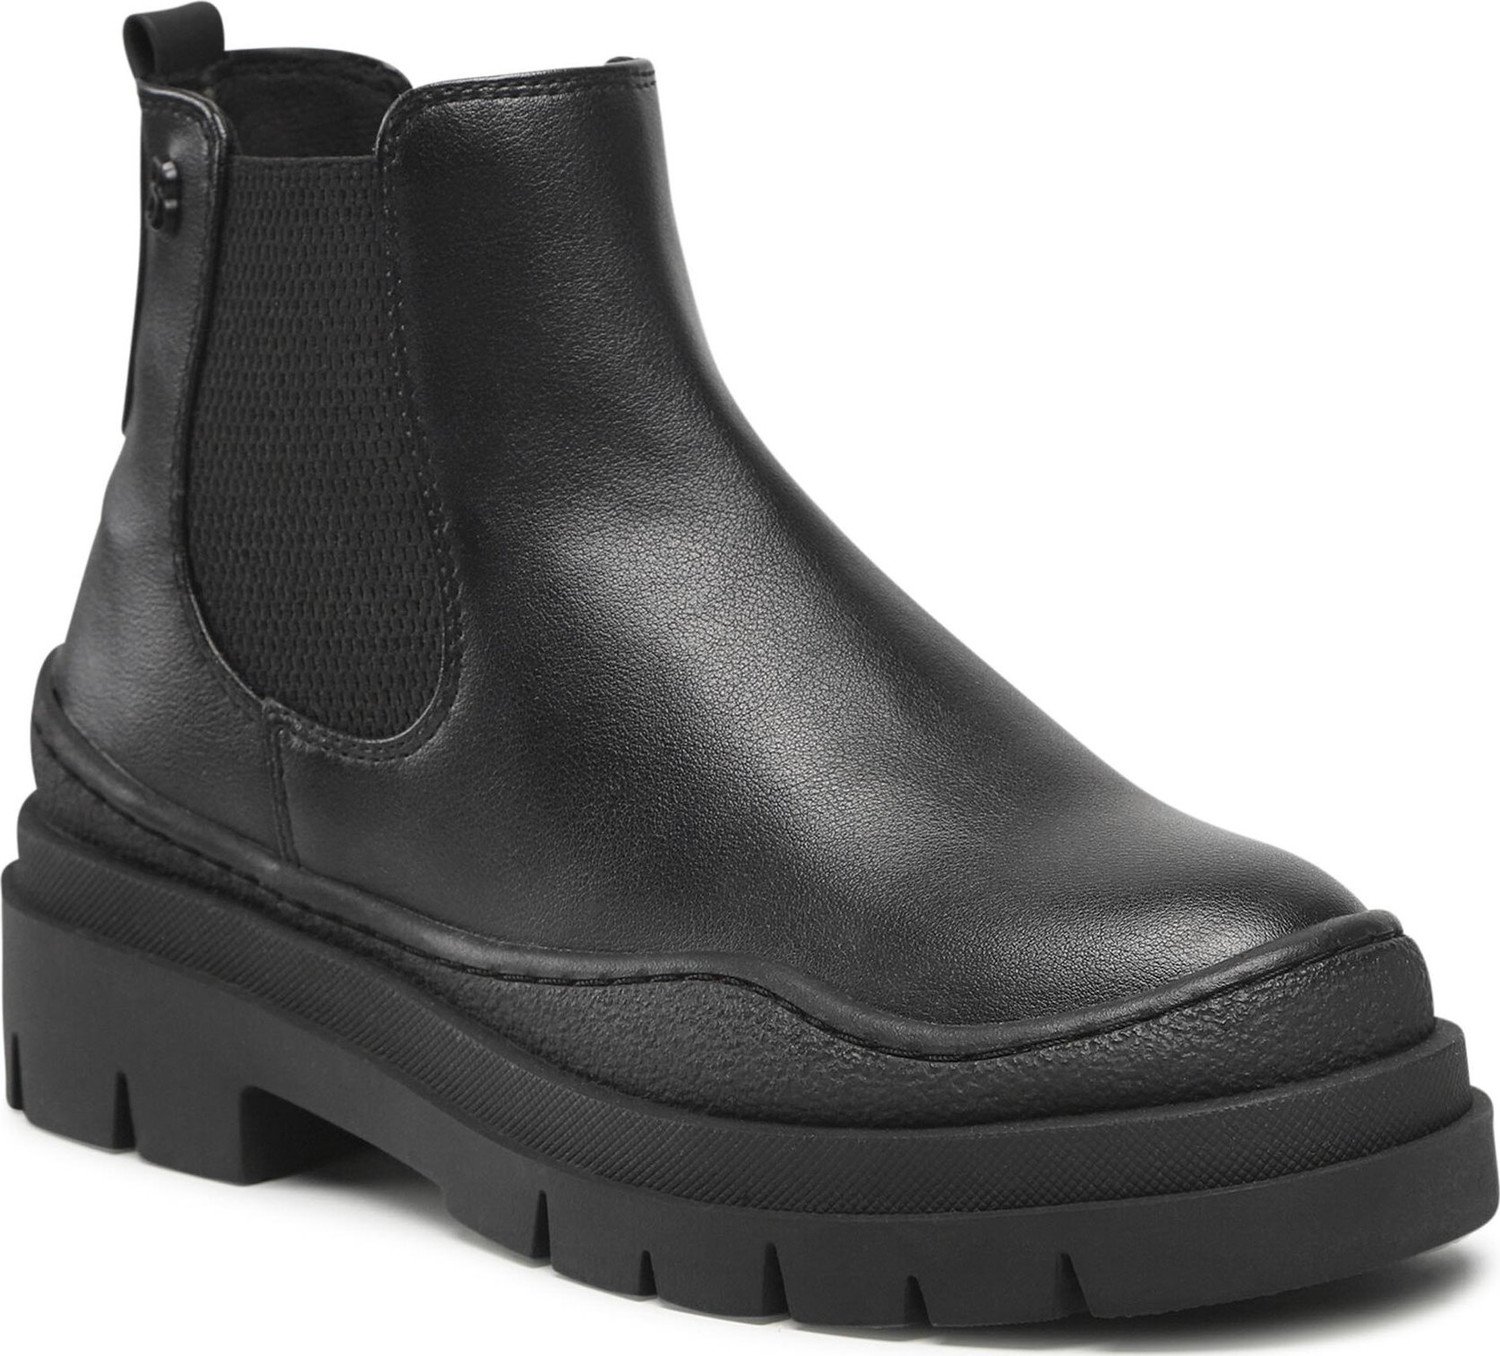 Kotníková obuv s elastickým prvkem s.Oliver 5-25406-29 Black 001